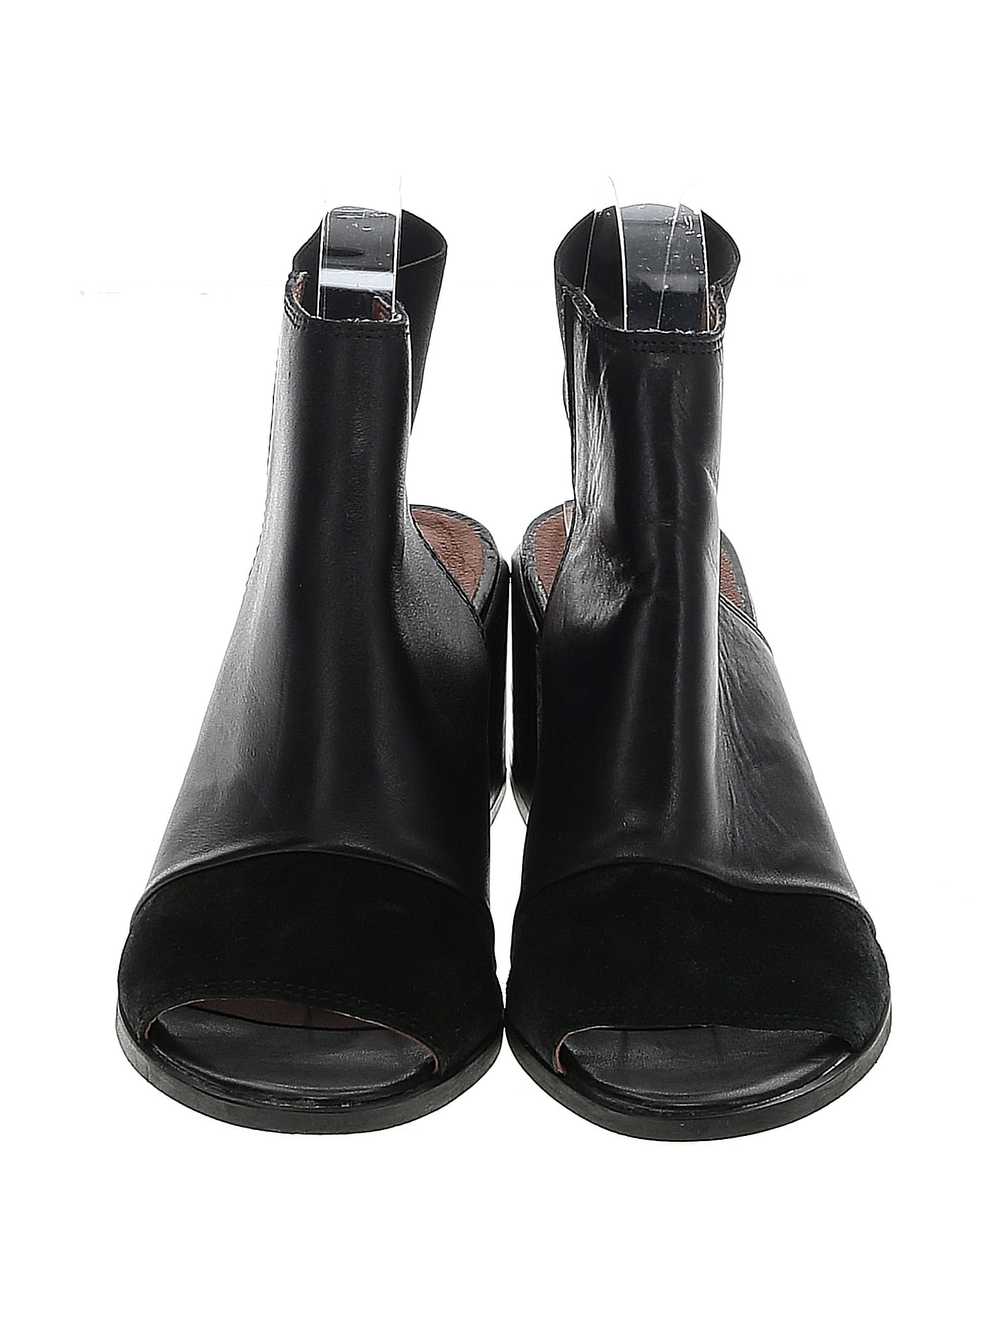 Steve Madden Women Black Heels 38 eur - image 2